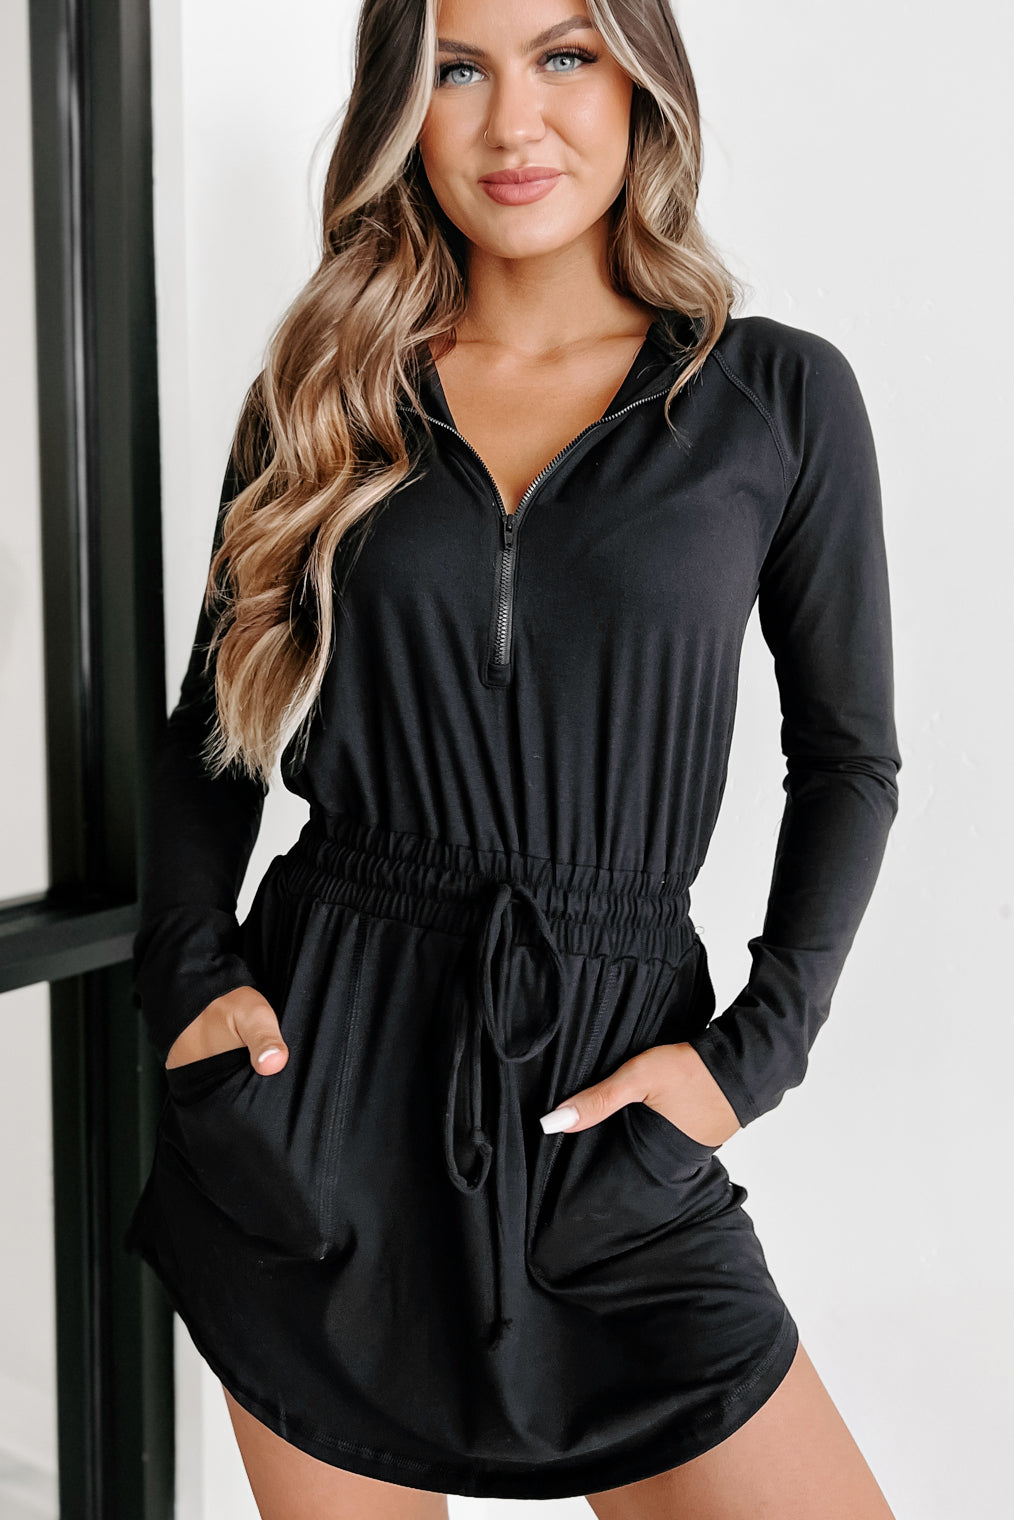 Women's Long Sleeve Buttery Soft Hoodie Romper Dress in Black